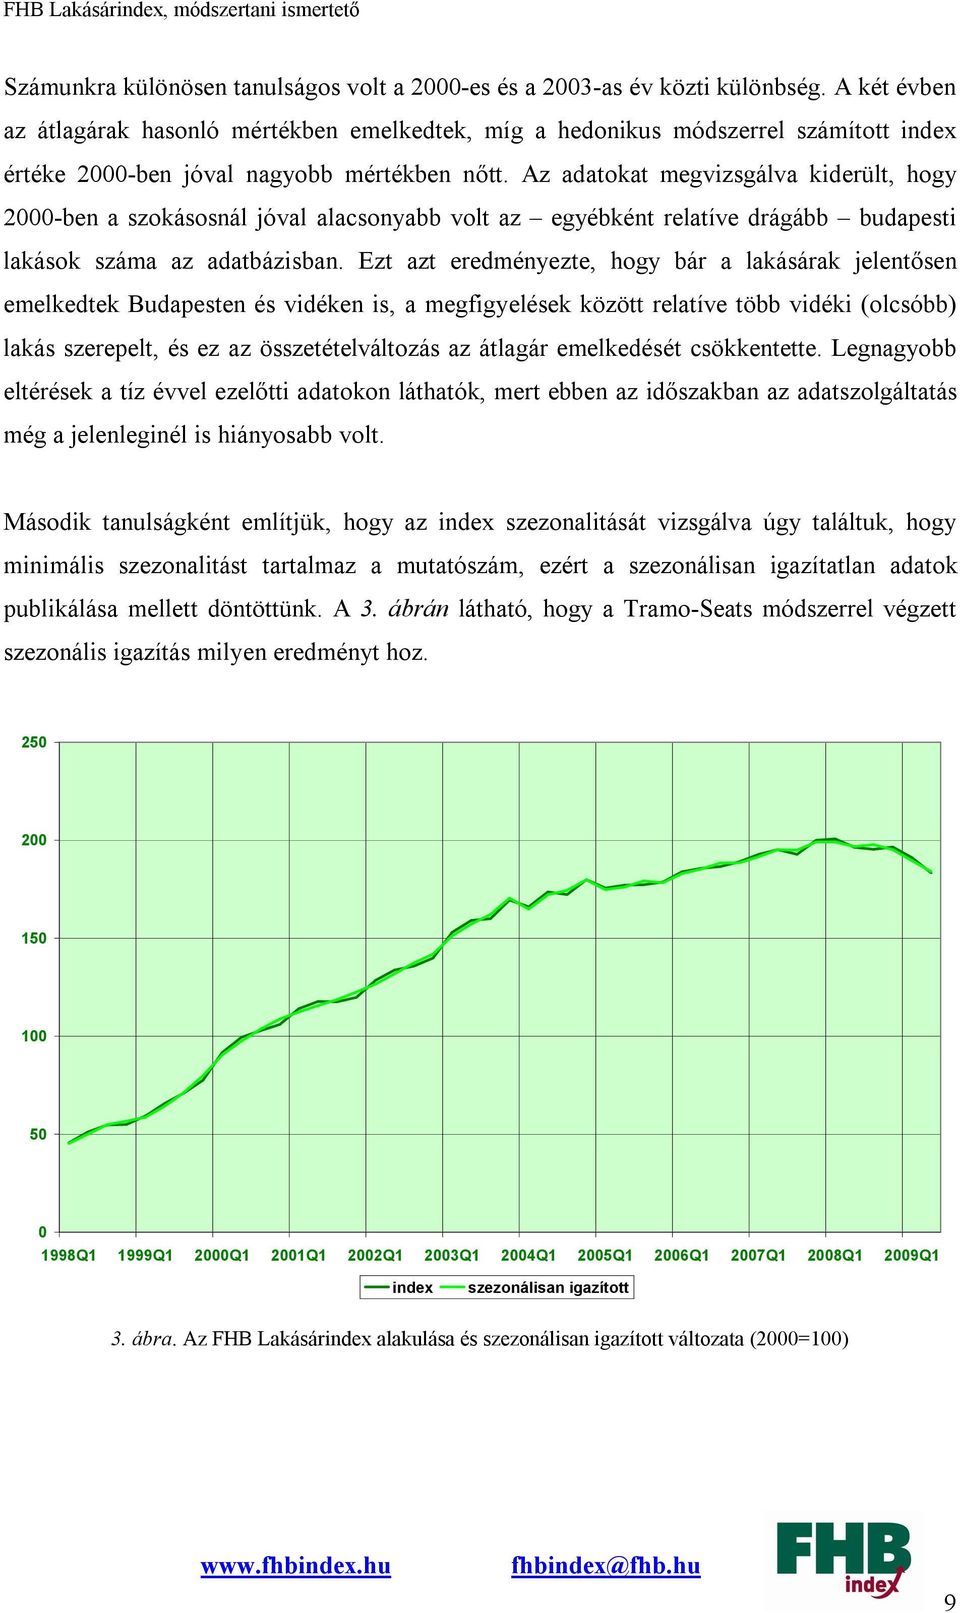 Az adatokat megvizsgálva kiderült, hogy 2000-ben a szokásosnál jóval alacsonyabb volt az egyébként relatíve drágább budapesti lakások száma az adatbázisban.